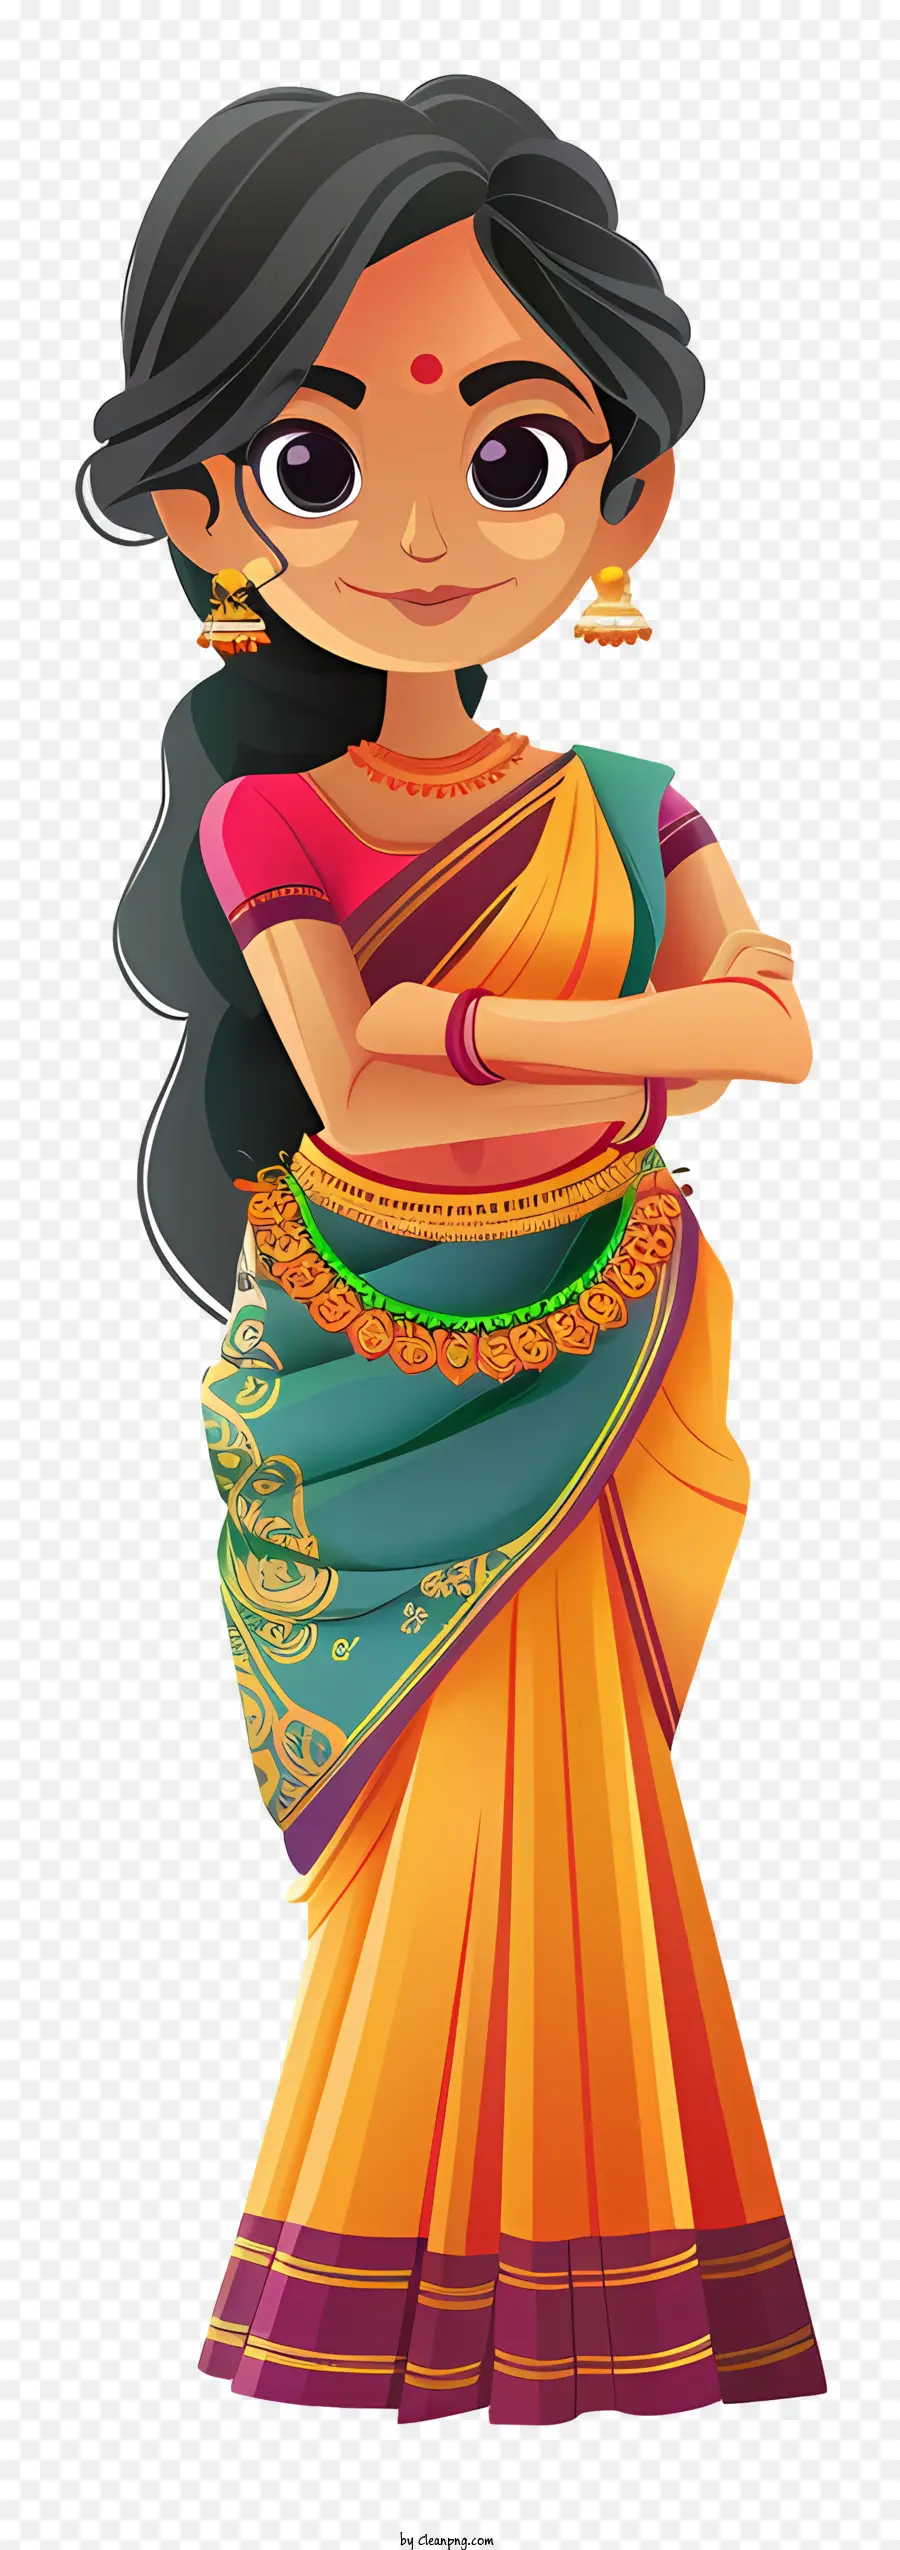 indische Frau Cartoon traditionelle indische Kleidung Sari indische Mode traditionelle Kleidung - Traditionelles indisches Mädchen im farbenfrohen Sari